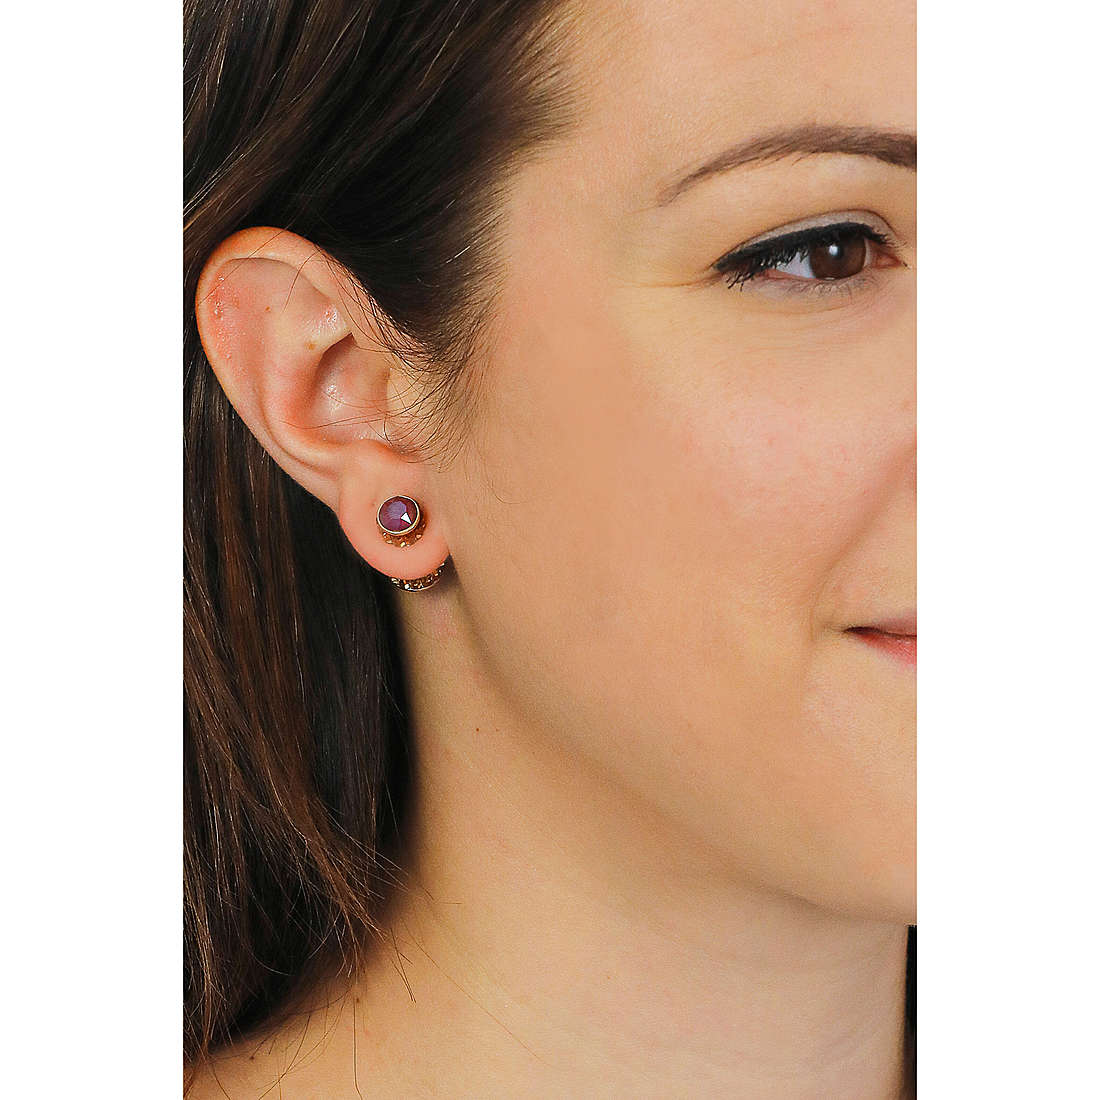 Swarovski earrings Orbita woman 5600524 wearing